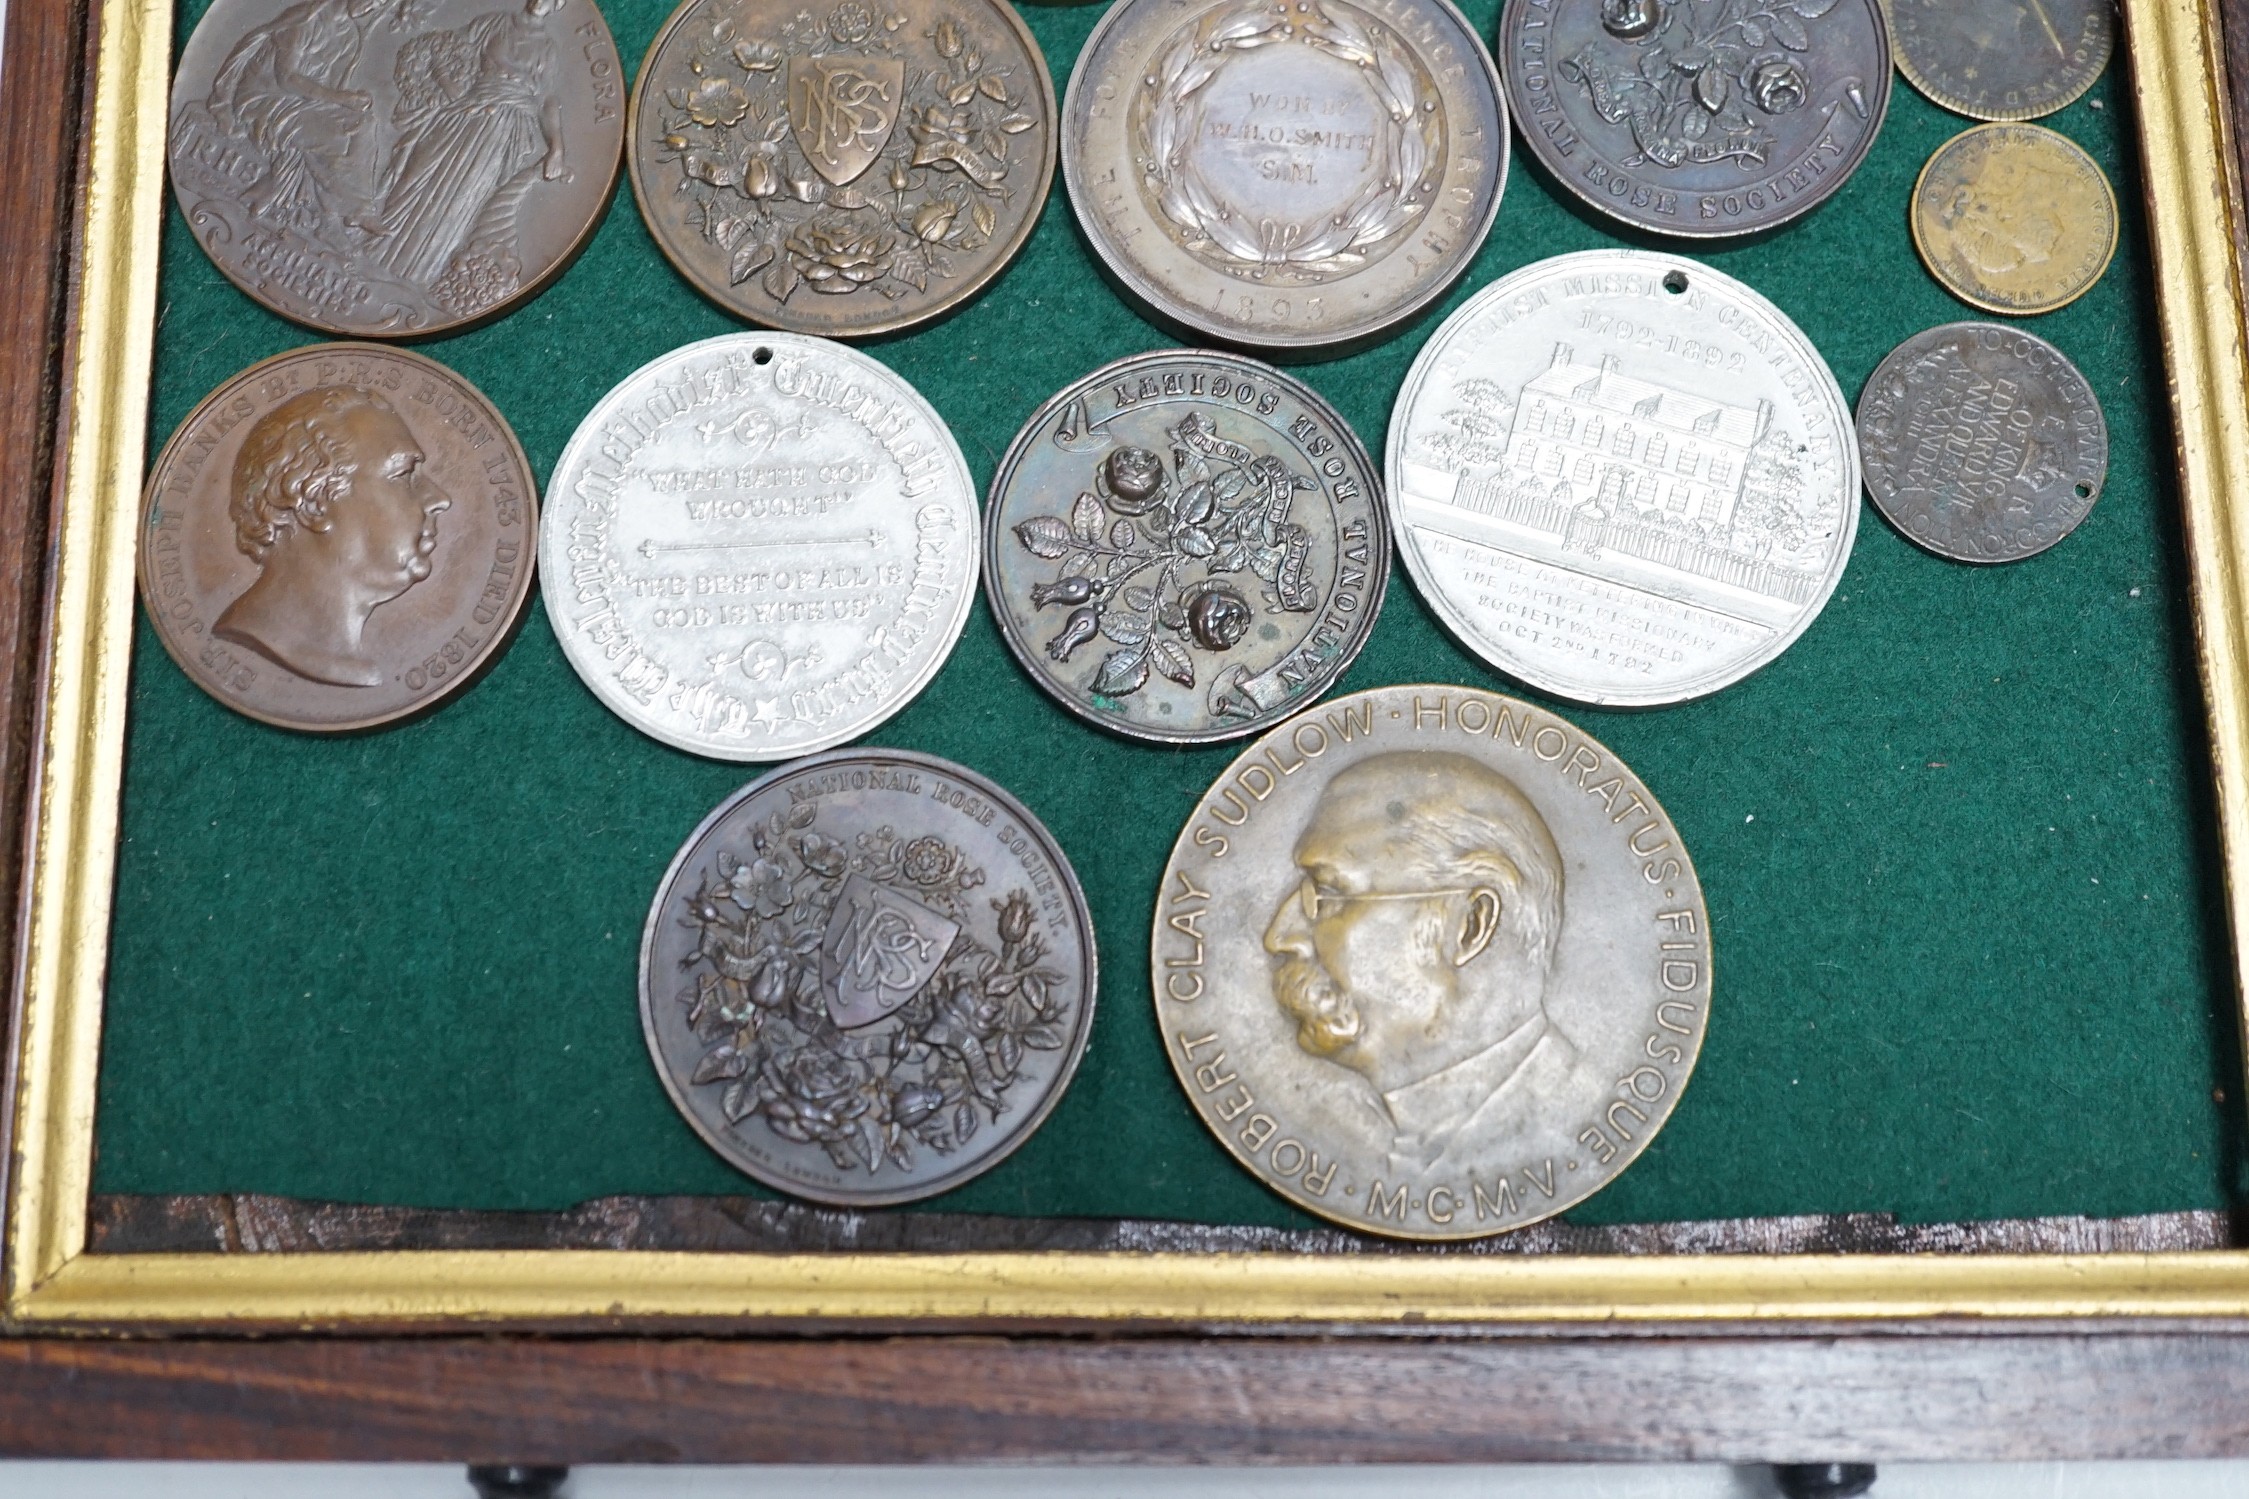 19th/20th century British commemorative medals –